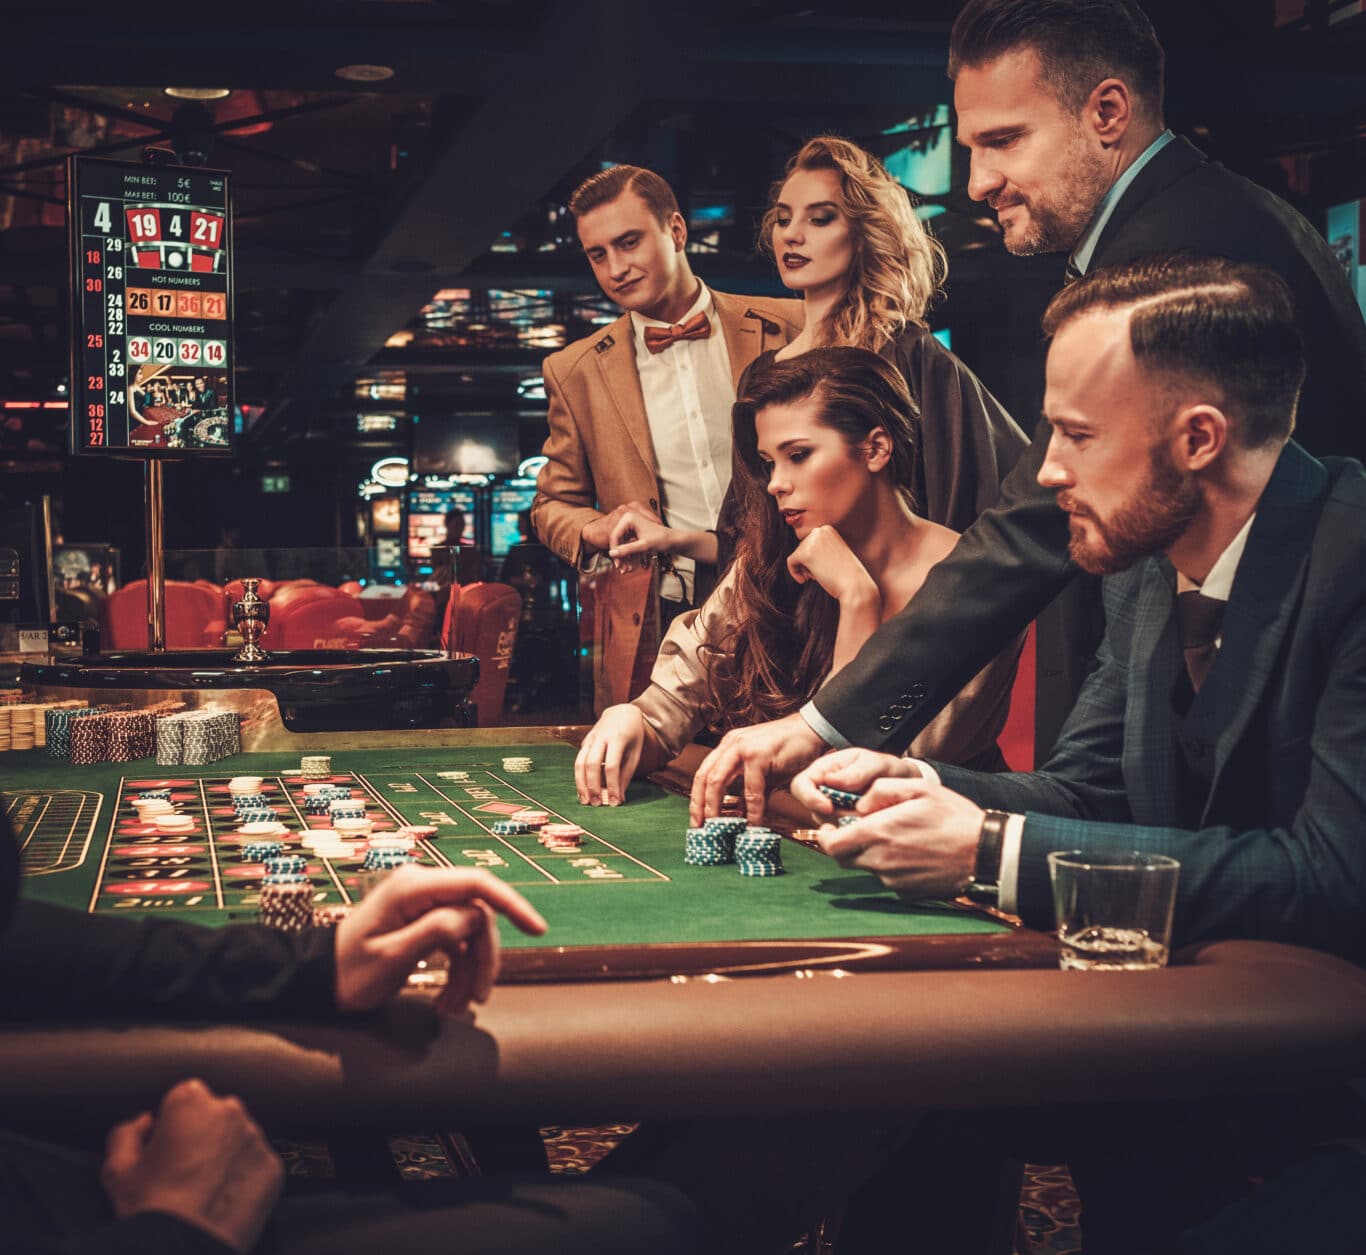 upper class friends gambling in a casino 2021 08 26 16 21 17 utc